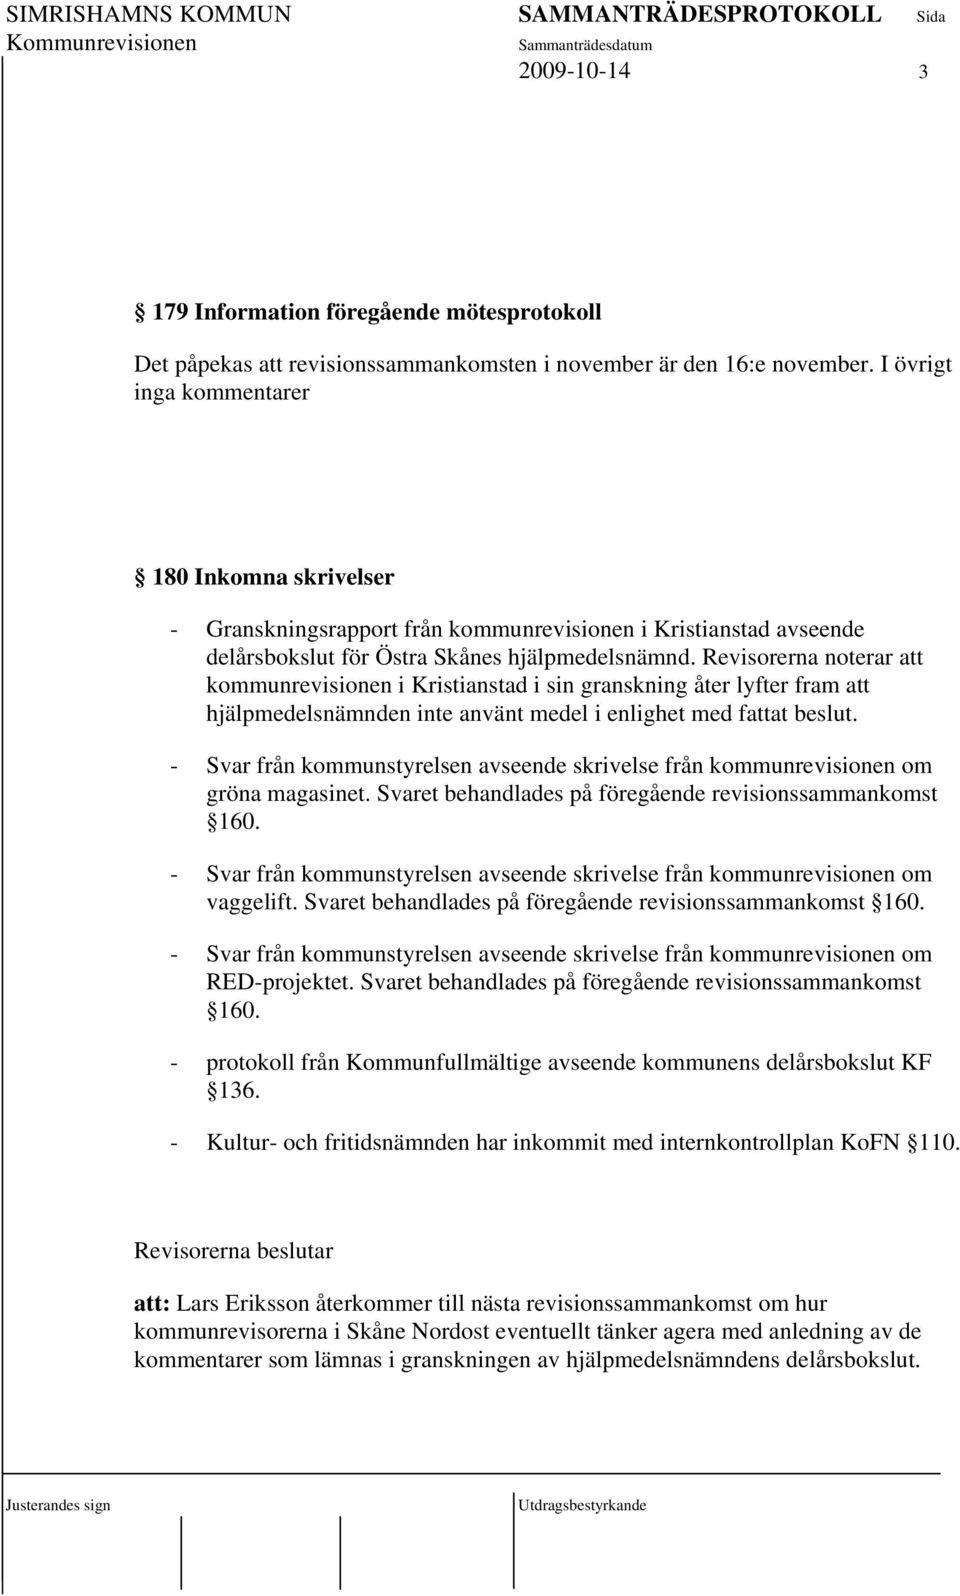 Revisorerna noterar att kommunrevisionen i Kristianstad i sin granskning åter lyfter fram att hjälpmedelsnämnden inte använt medel i enlighet med fattat beslut.